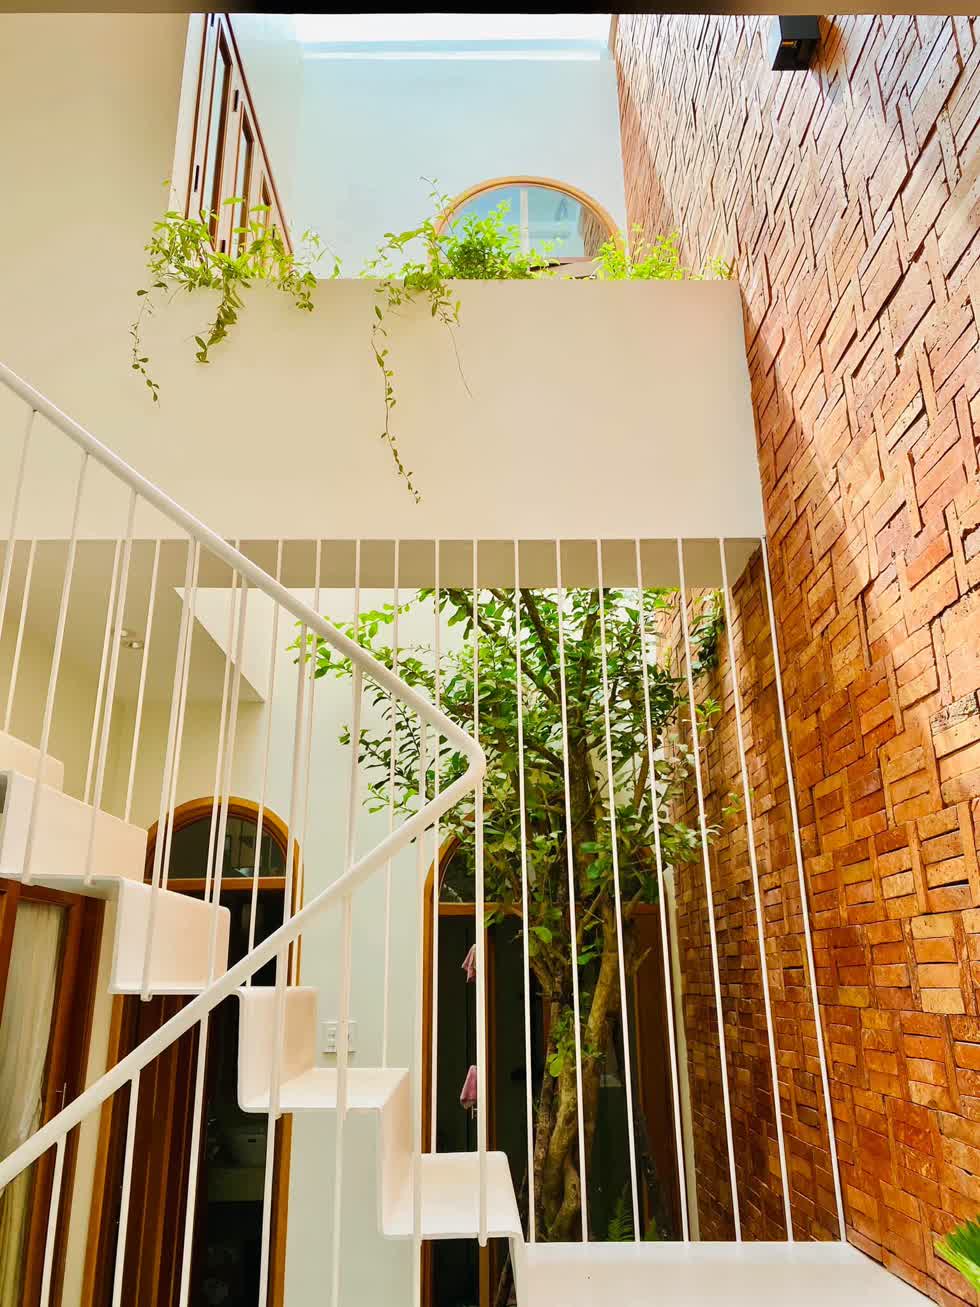 Cầu thang bằng thép màu trắng nhẹ nhàng, tinh tế dẫn lên tầng 2 của ngôi nhà.